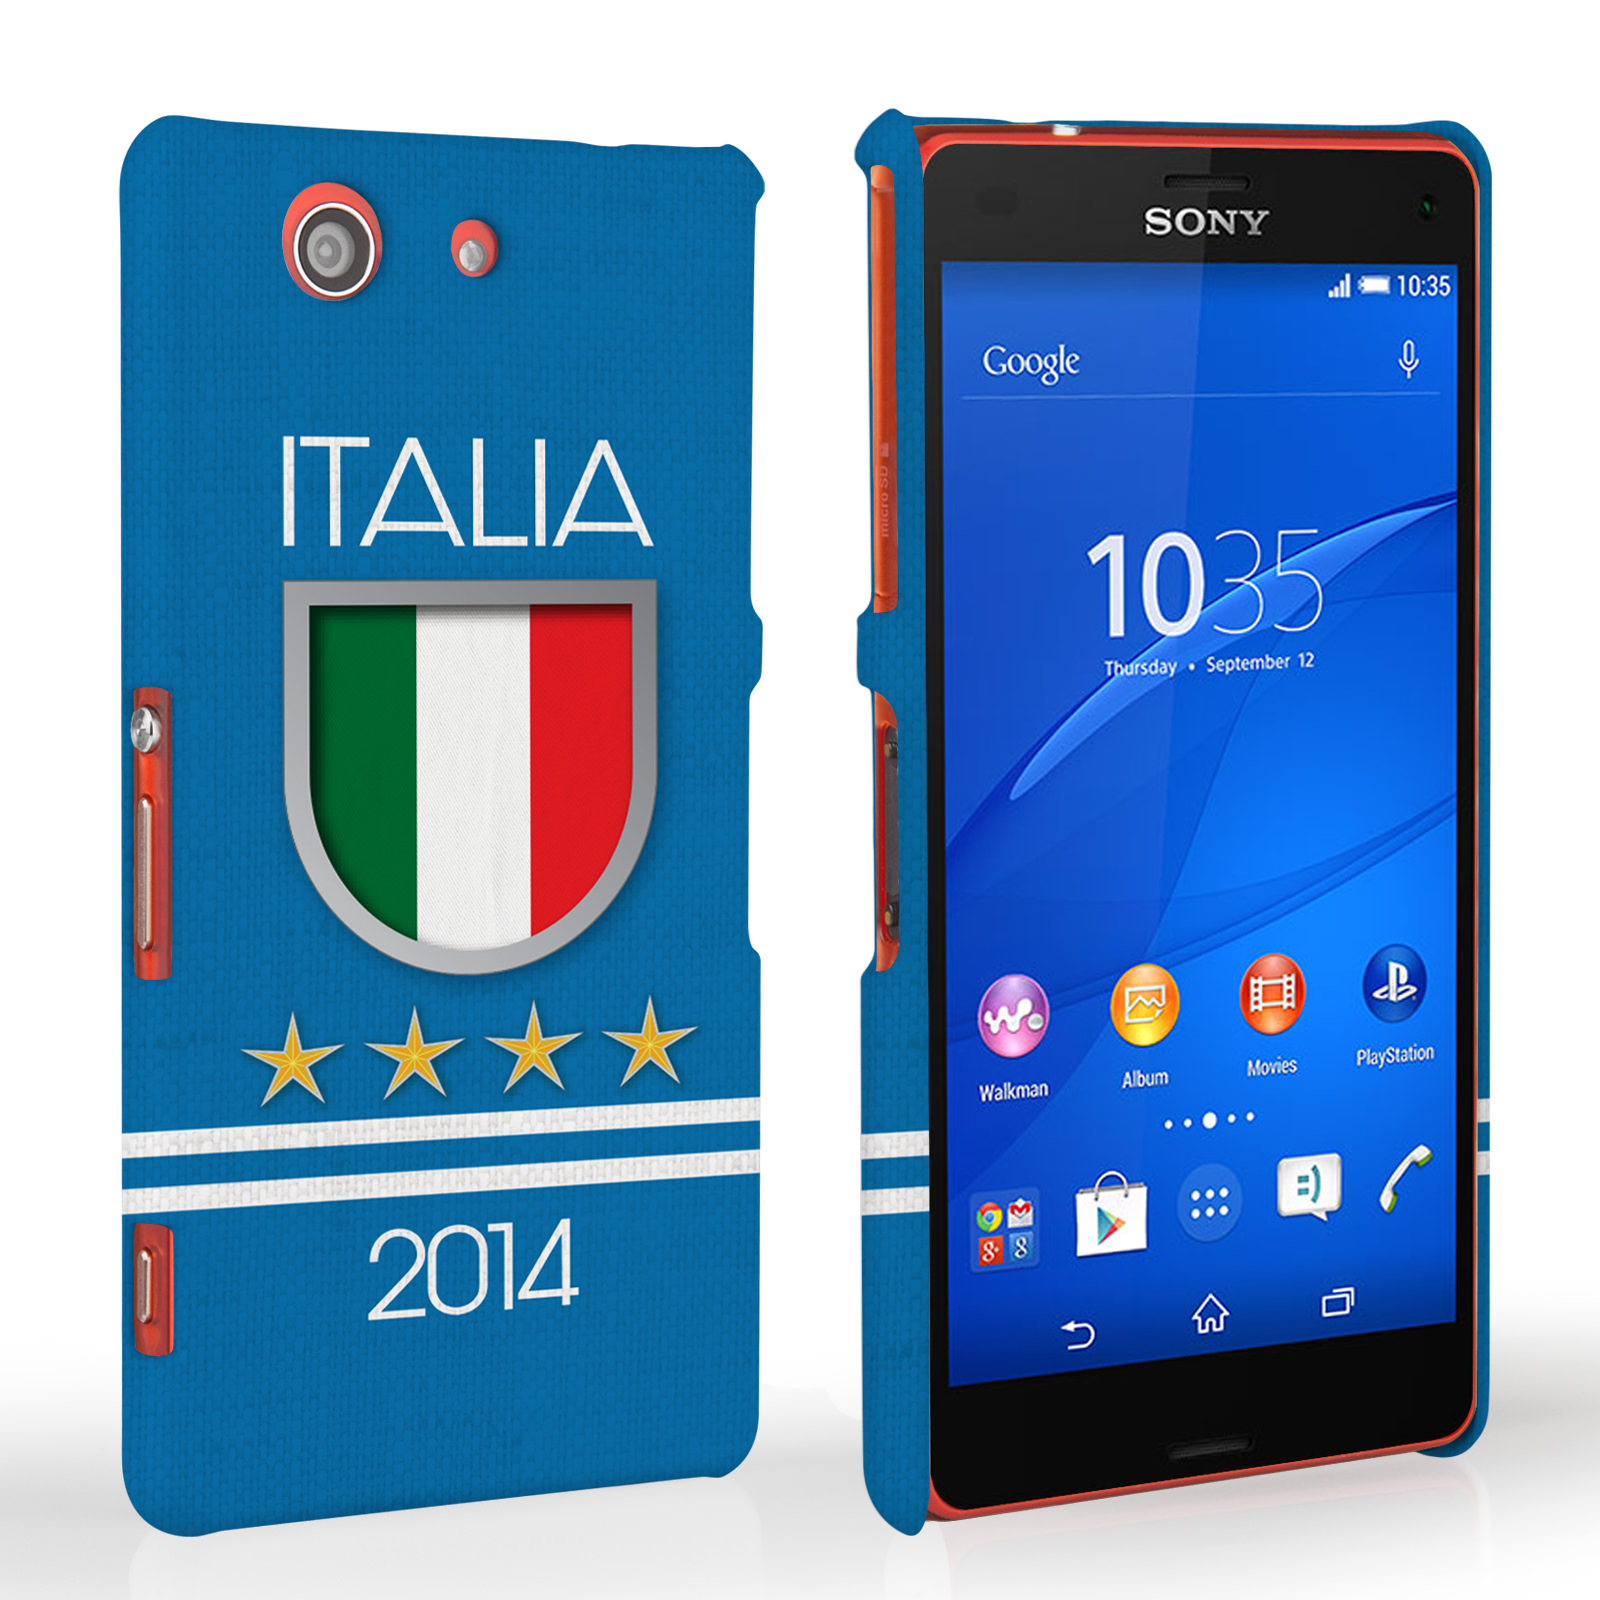 Caseflex Sony Xperia Z3 Compact Italia World Cup Case